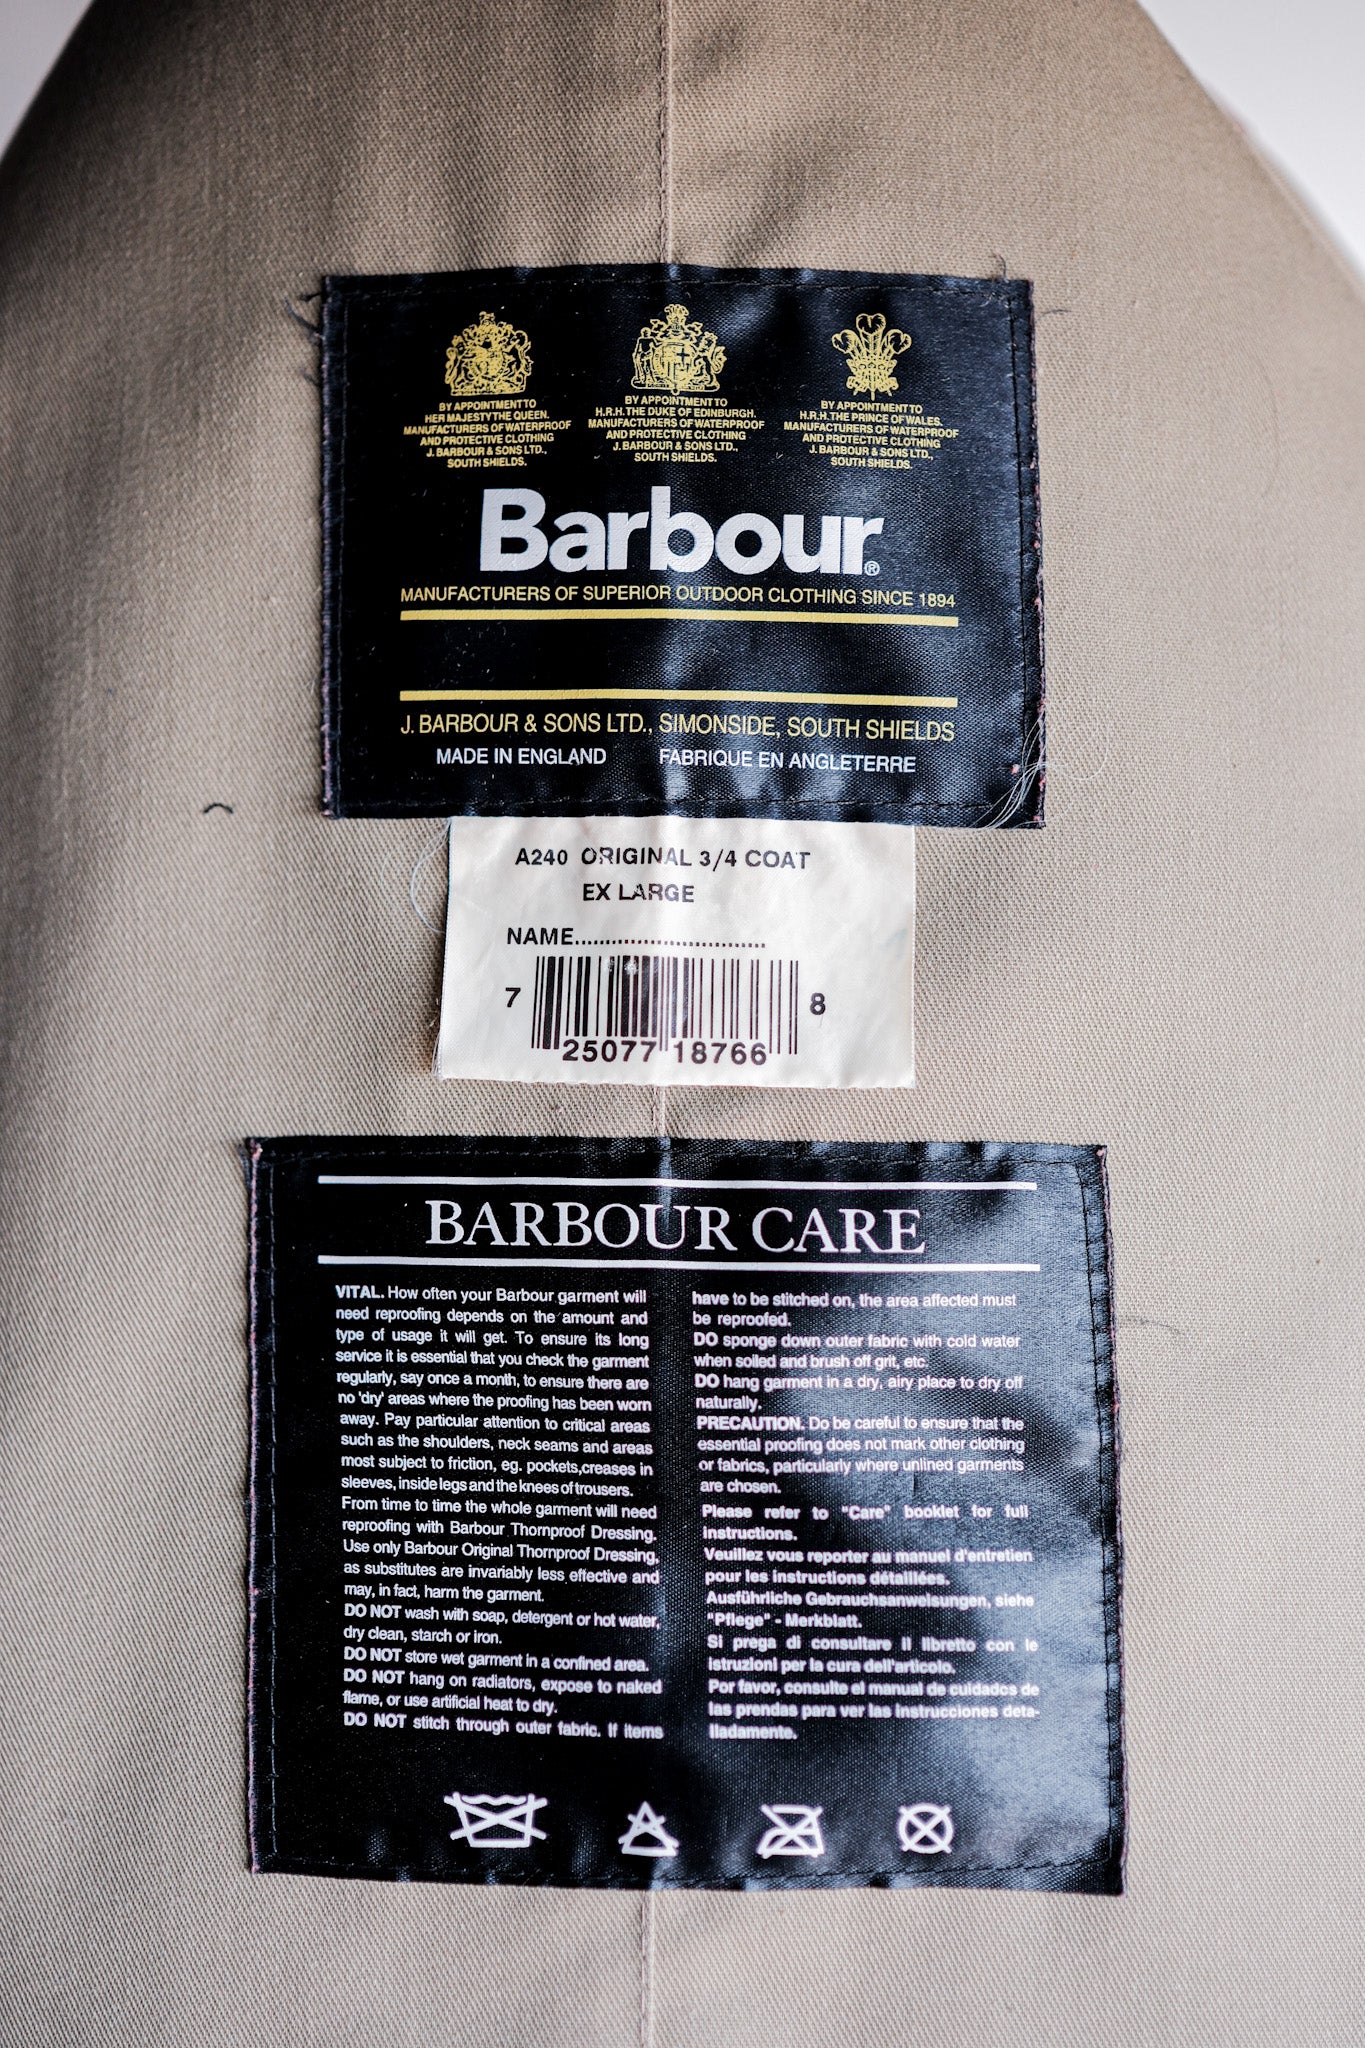 [~ 90's] Barbour vintage "Original 3/4 Coat" 3 Crest Six Large